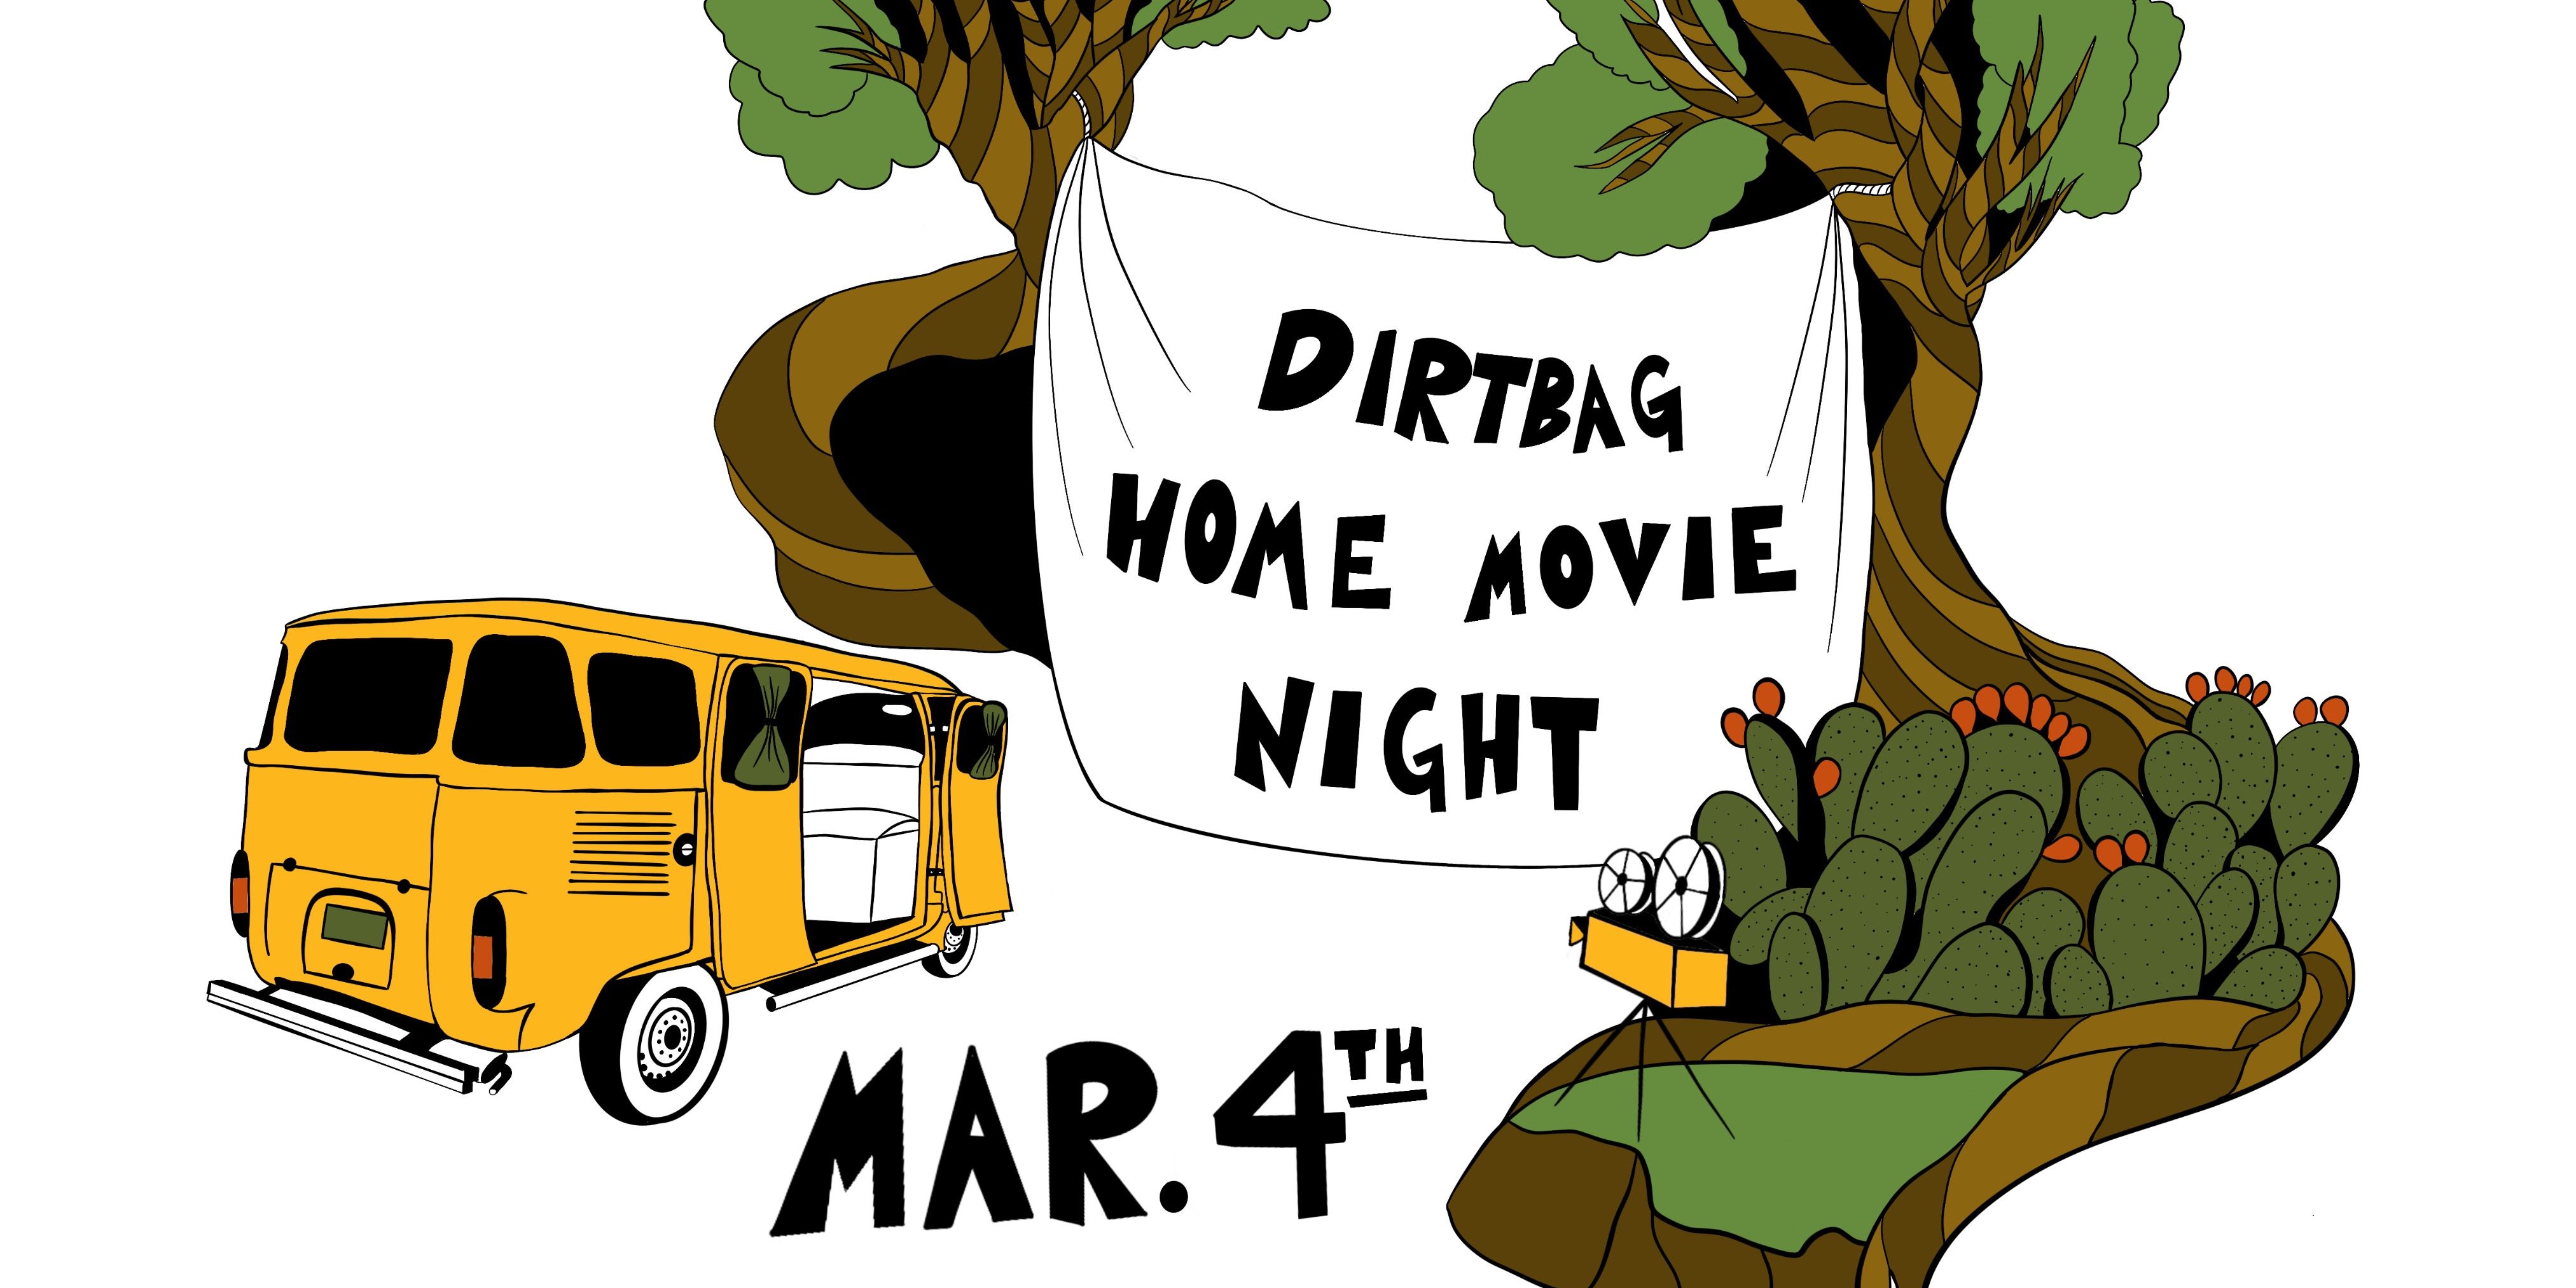 Dirtbag Home Movie Night Silent Auction event logo